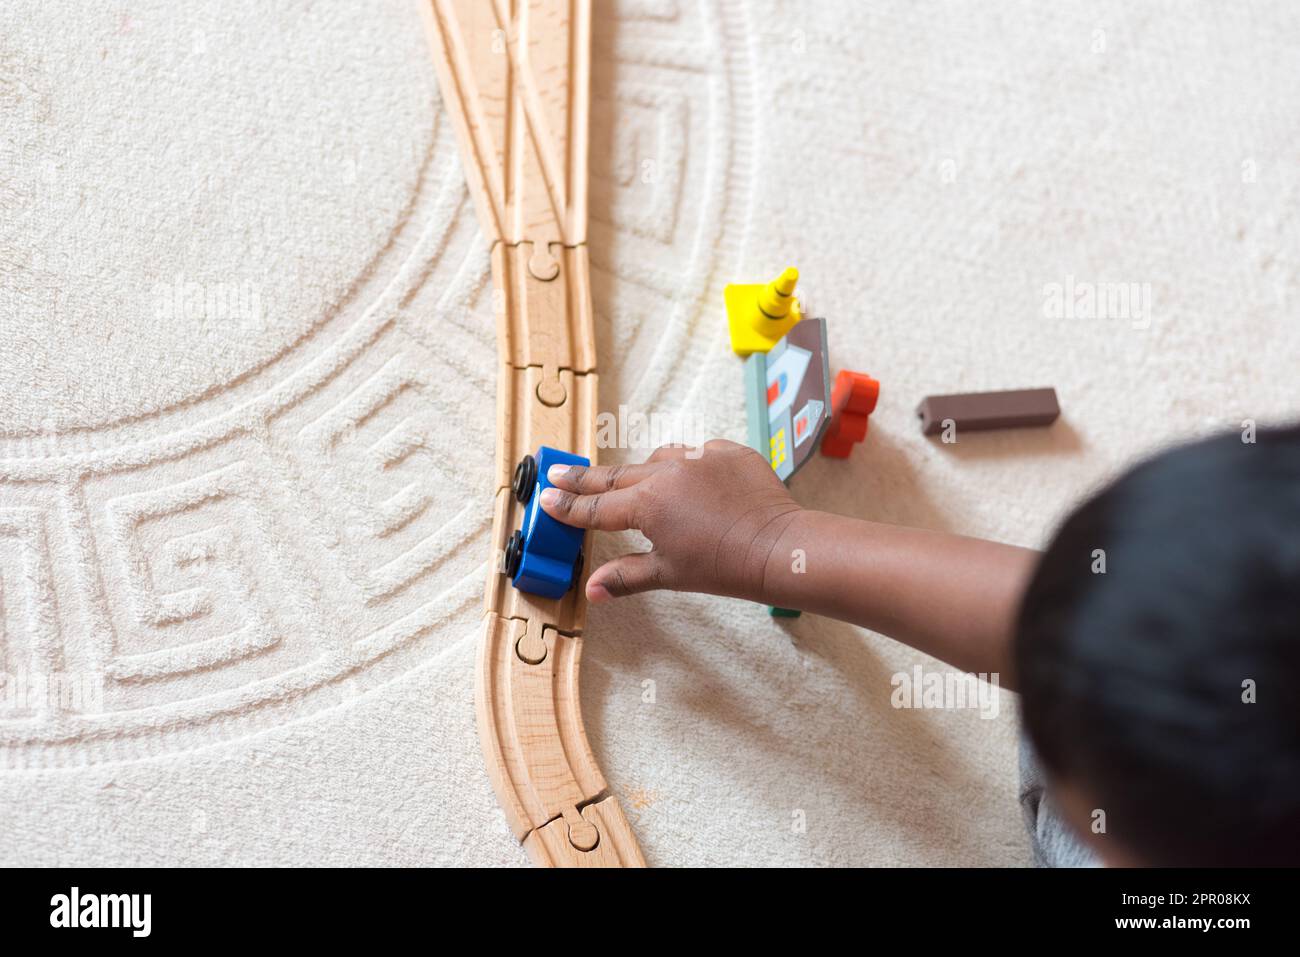 Asiatisches Kind, das mit einer hölzernen Bahnstrecke spielt Stockfoto